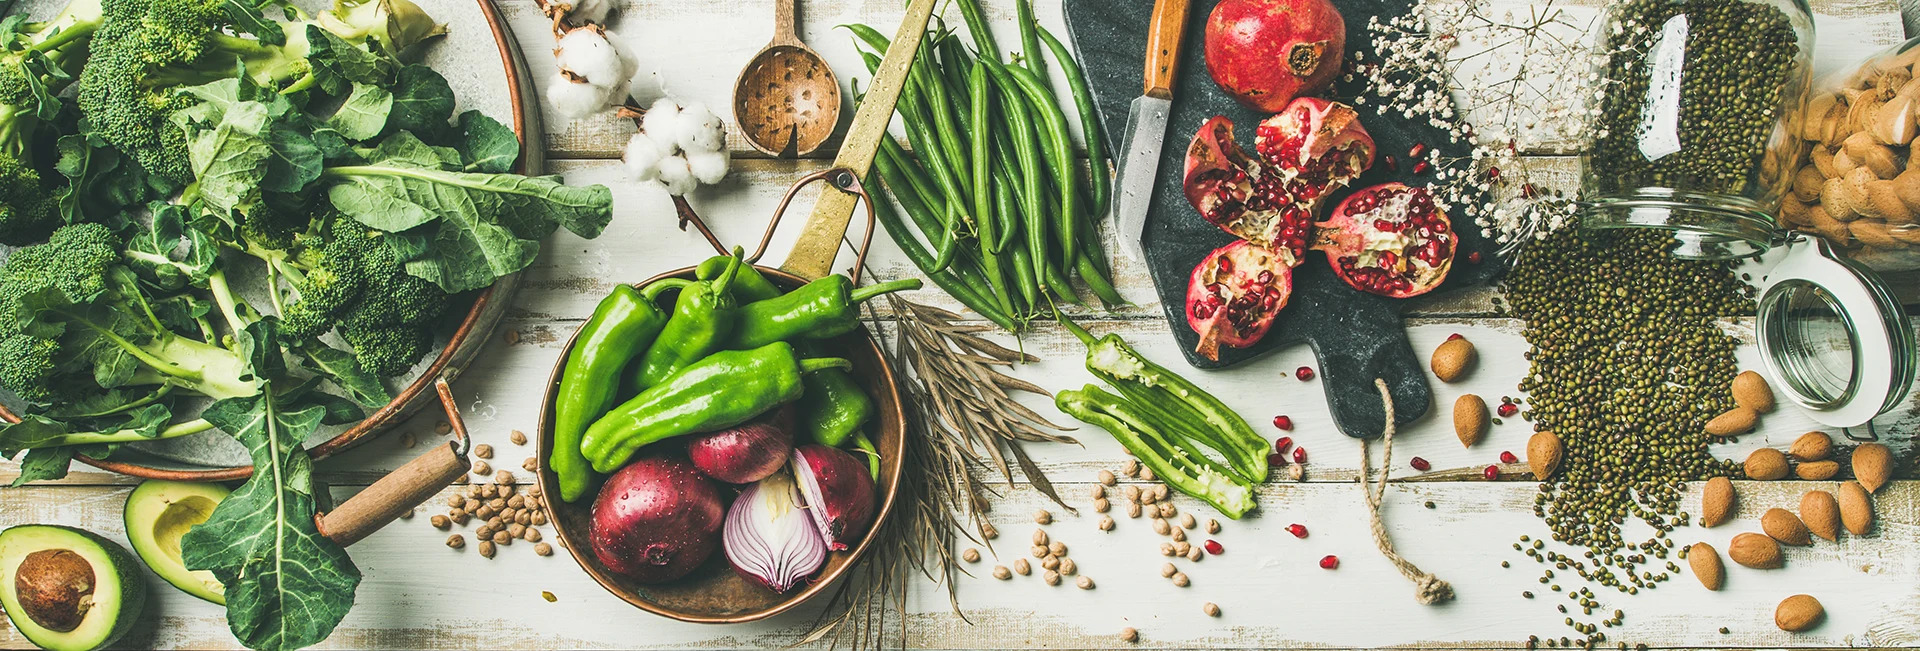 Le programme DietyCook chaque semaine vous allez pouvoir découvrir tous les plats healthy que nous vous proposons chaque semaine 